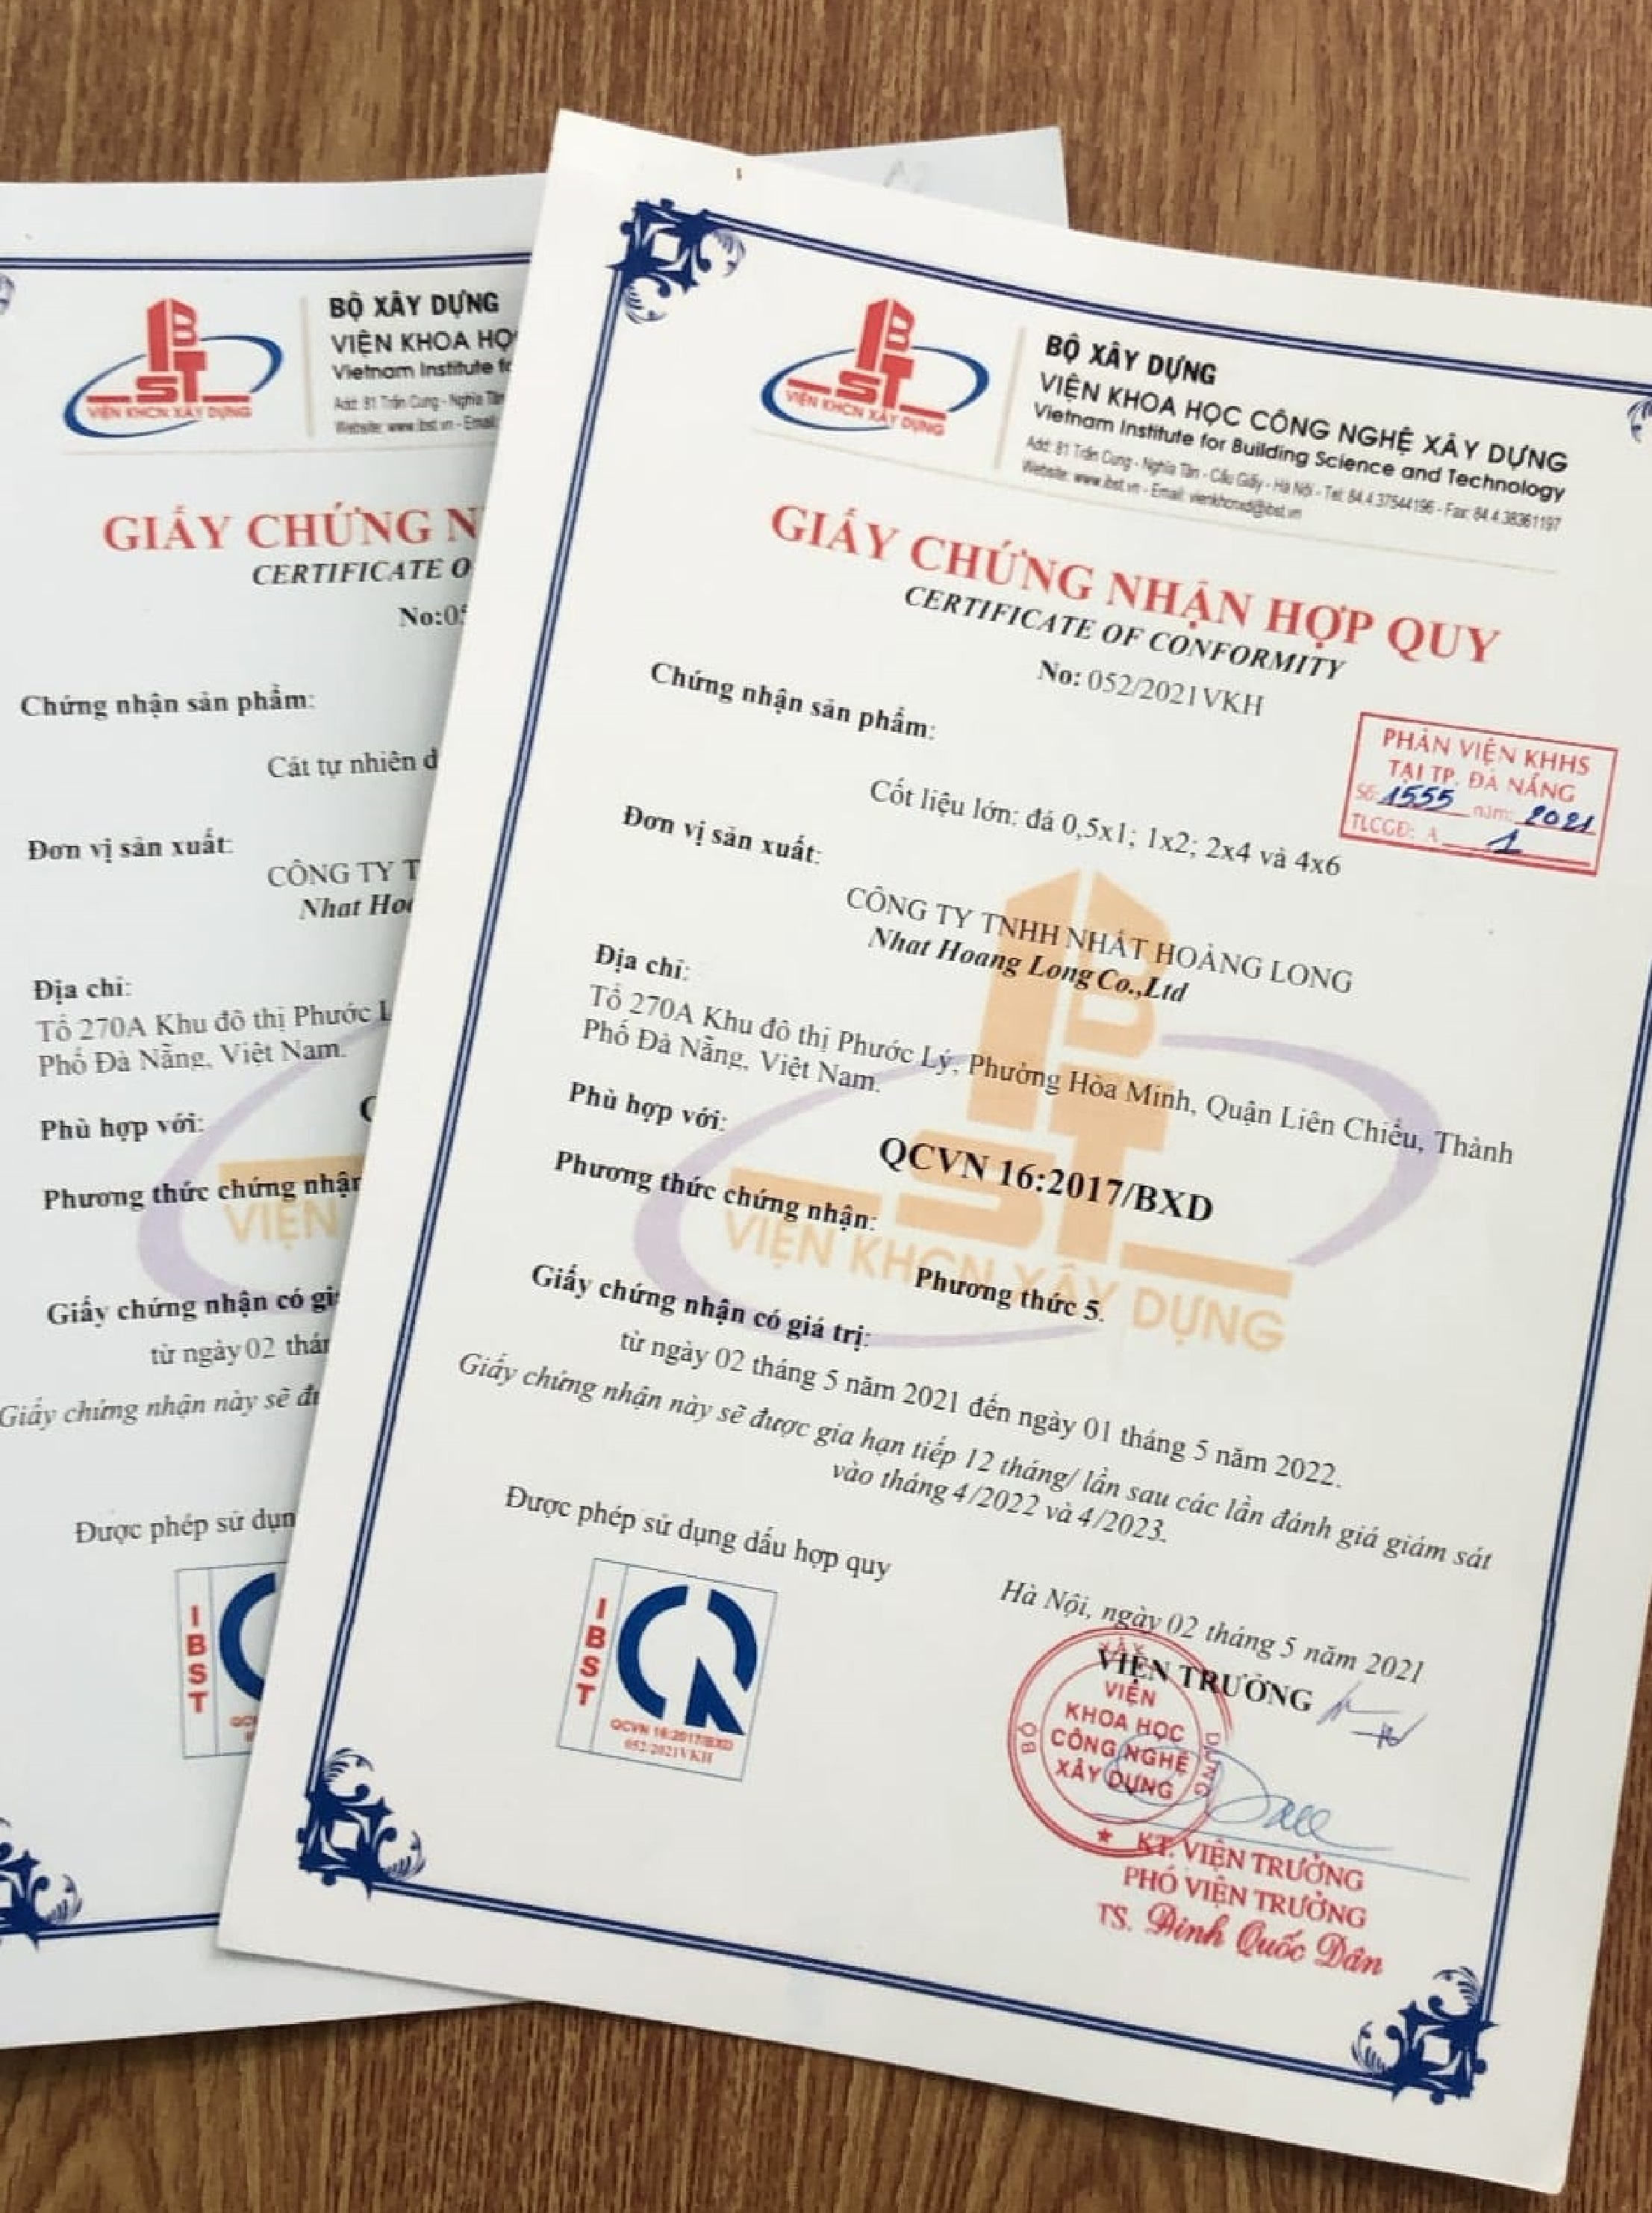 Đà Nẵng: Phát hiện nhiều loại giấy tờ giả trong xây dựng